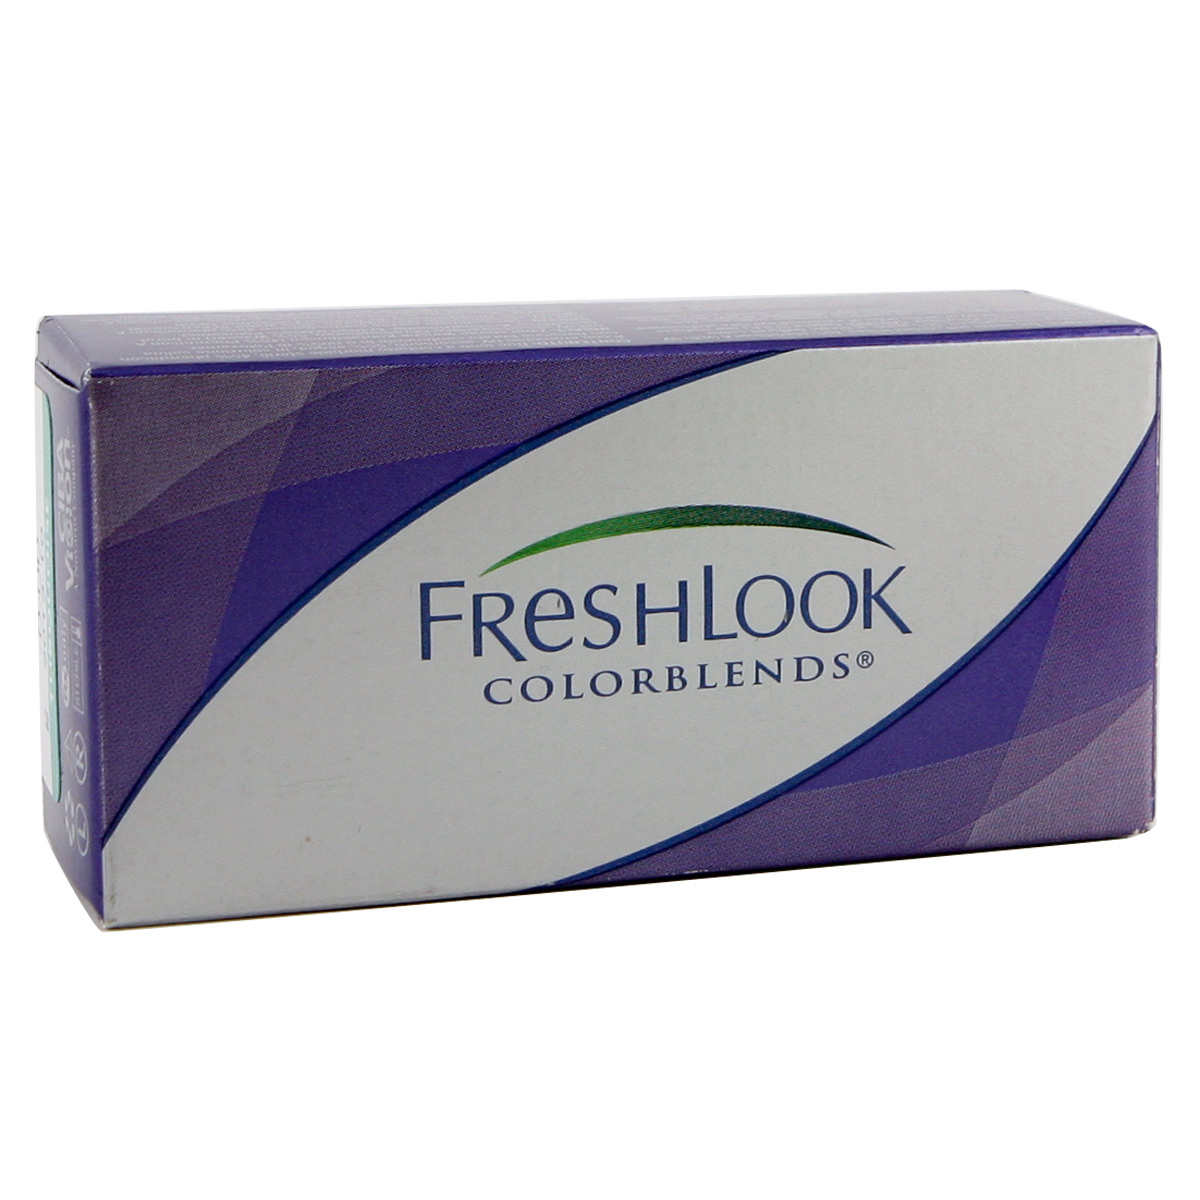 Image of Freshlook Colorblends 2 lenses